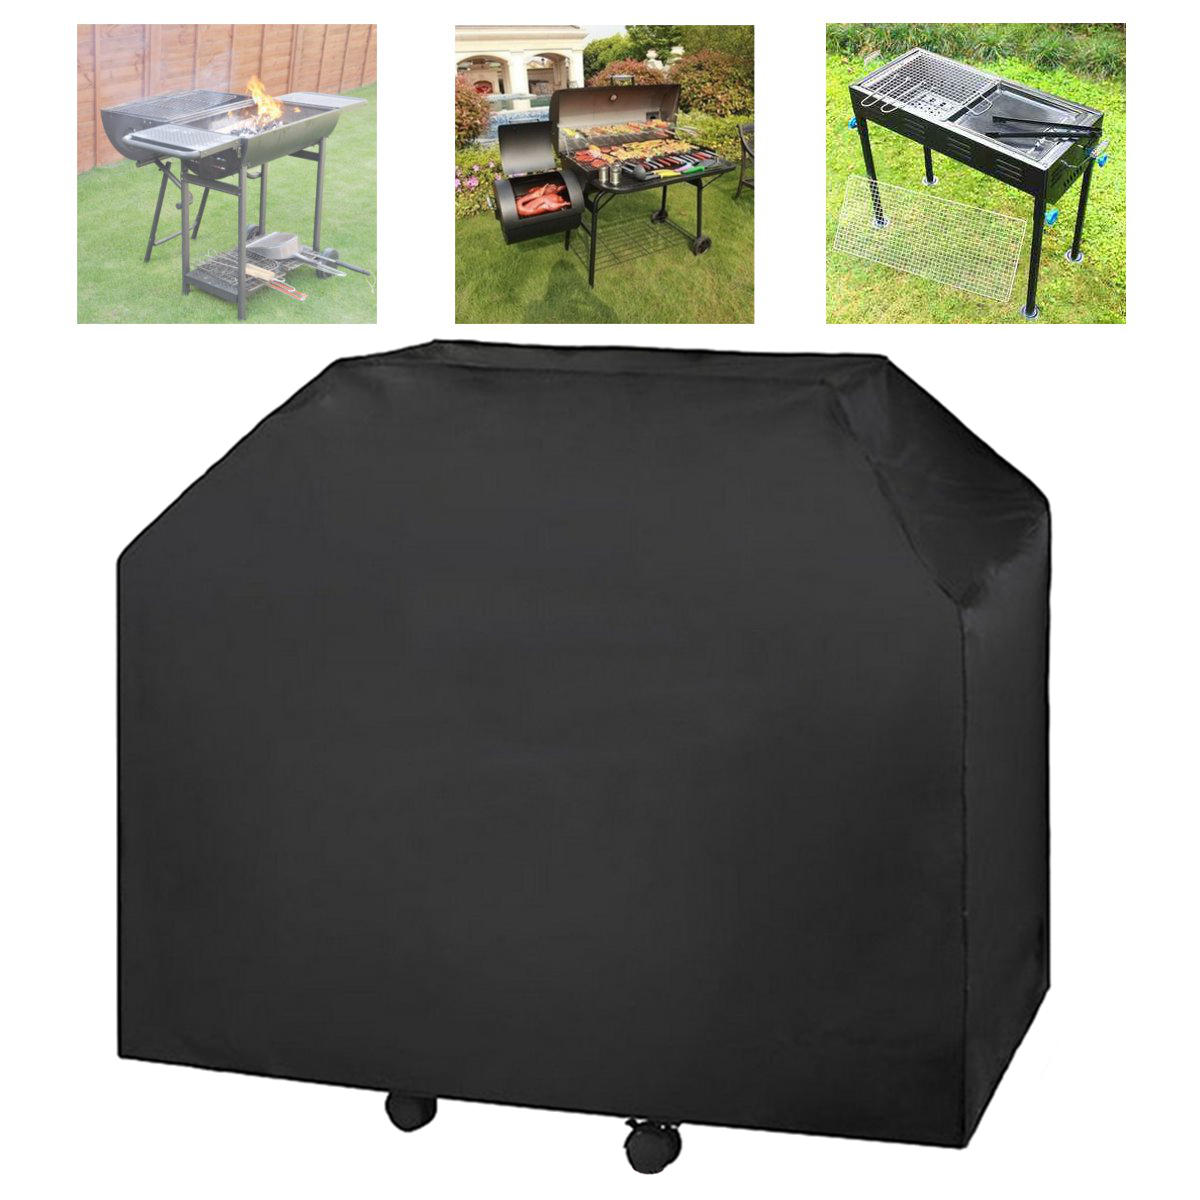 ançais: Housse noire résistante pour barbecue à gaz de dimensions 183x66x130 cm, protégeant de la pluie et idéale pour une utilisation en extérieur.